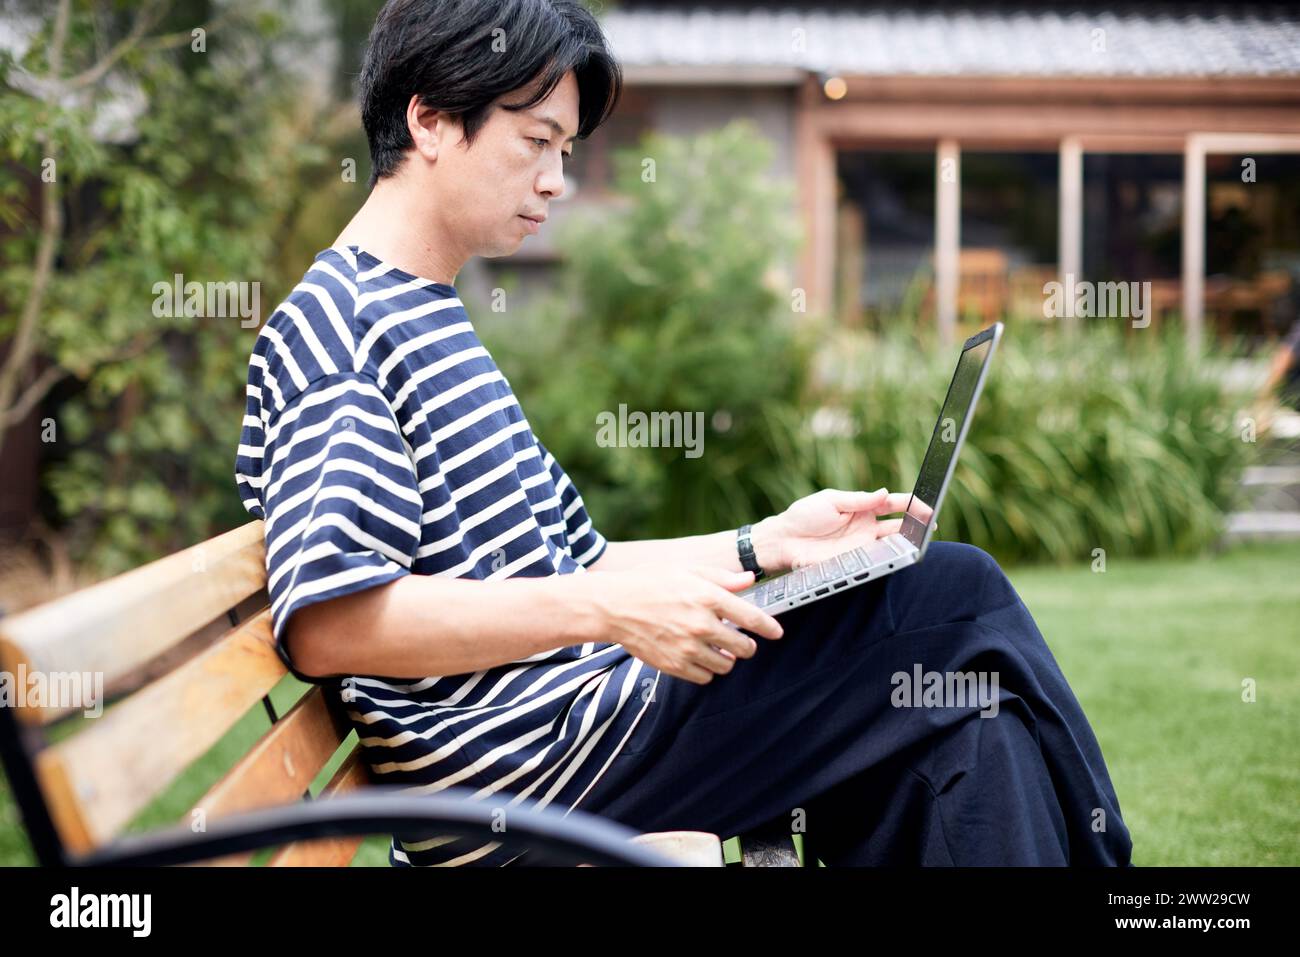 Ein Mann, der auf einer Bank sitzt und einen Laptop benutzt Stockfoto